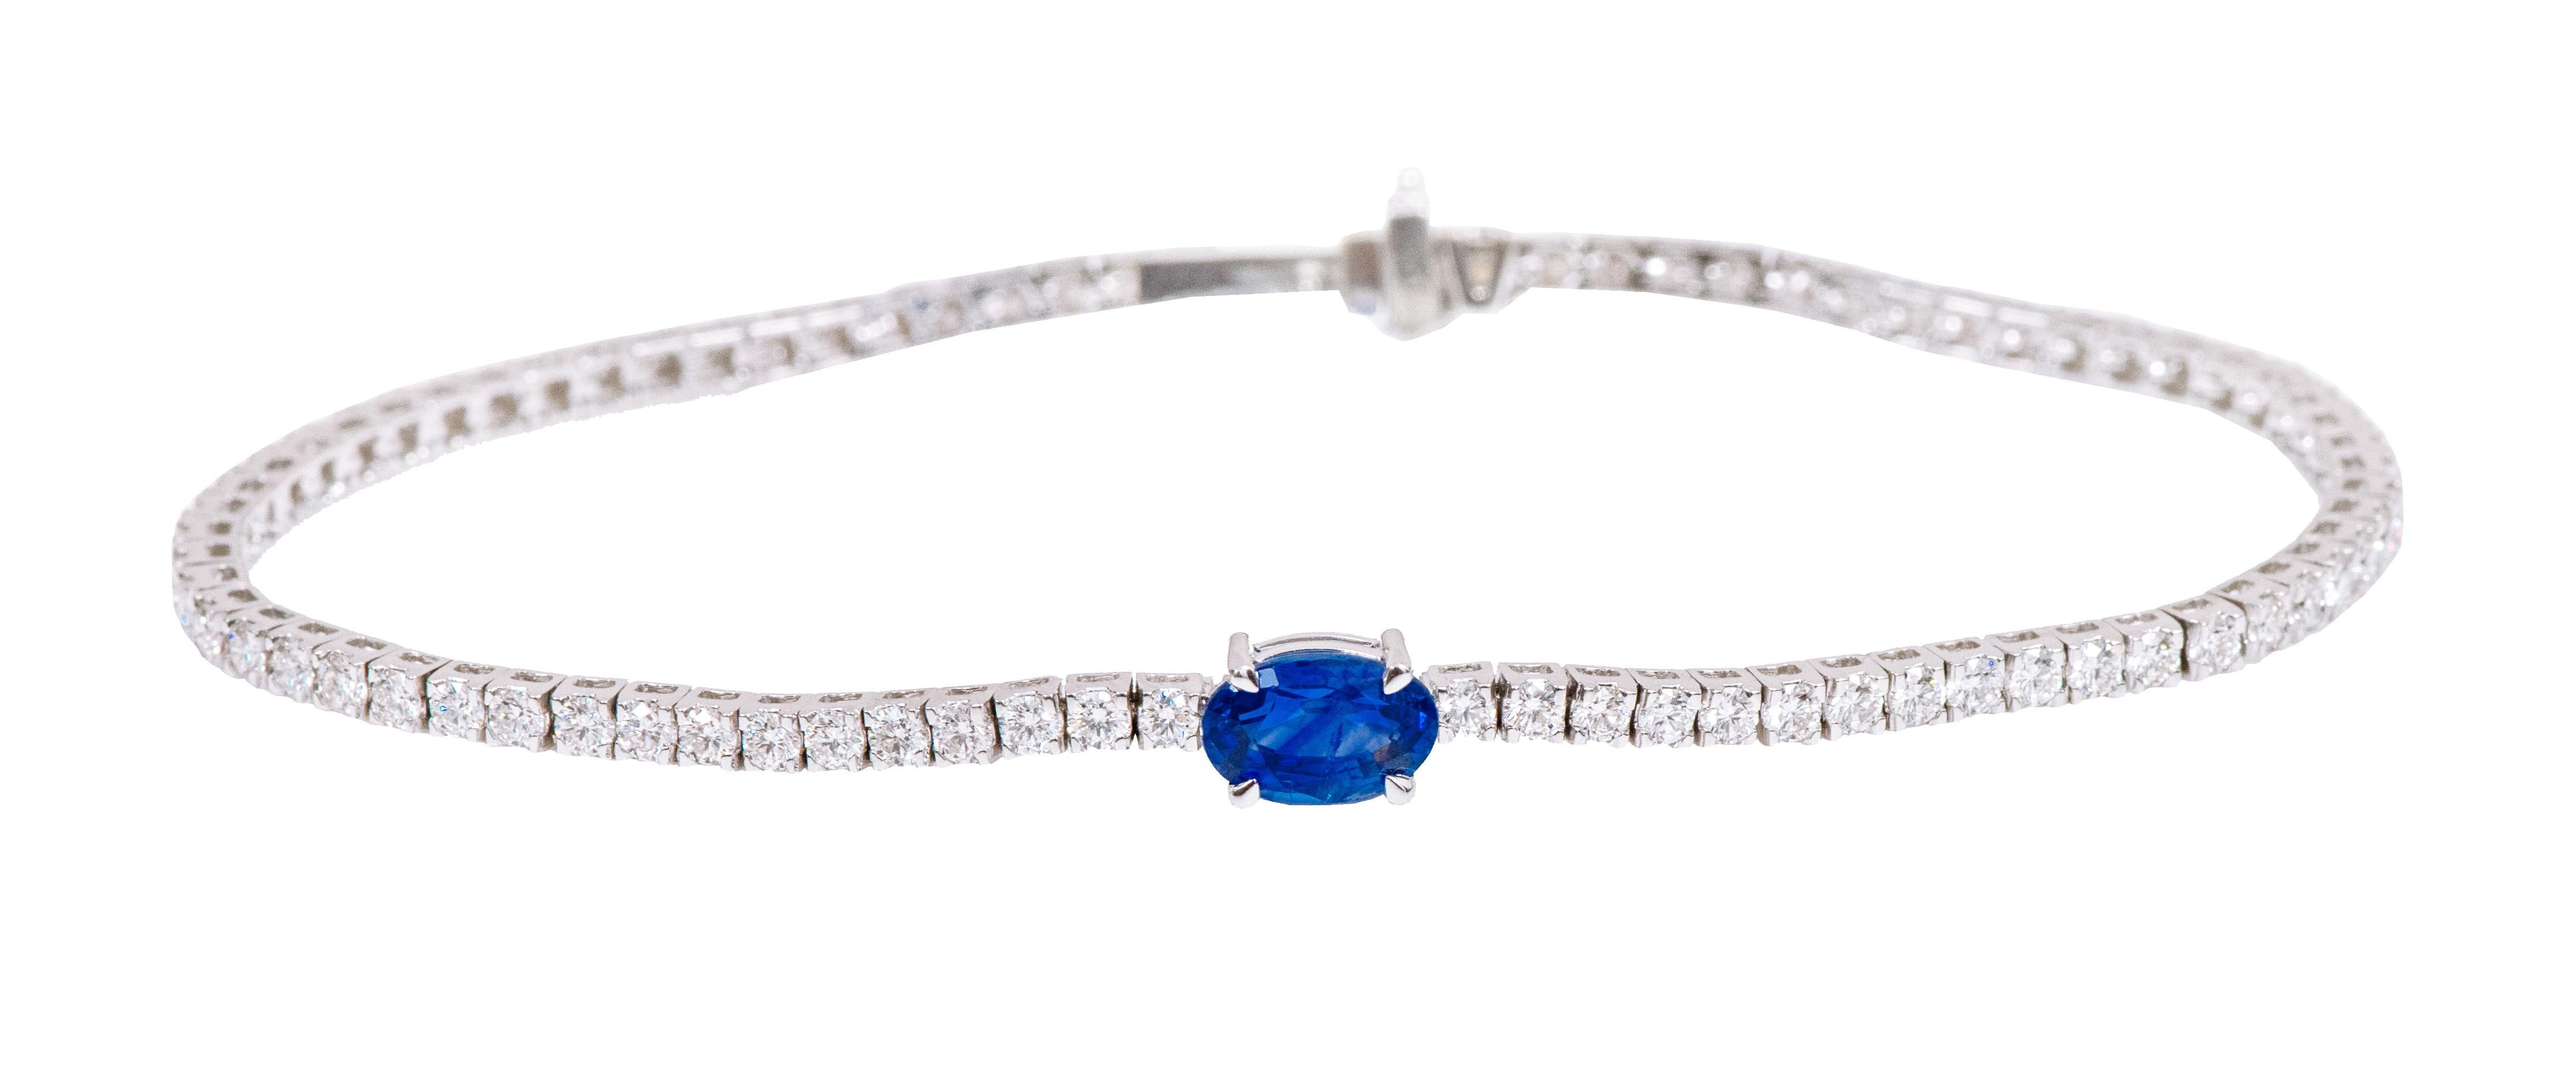 18 Karat Gold 3.65 Carat Solitaire Blue Sapphire and Diamond Tennis Bracelet For Sale